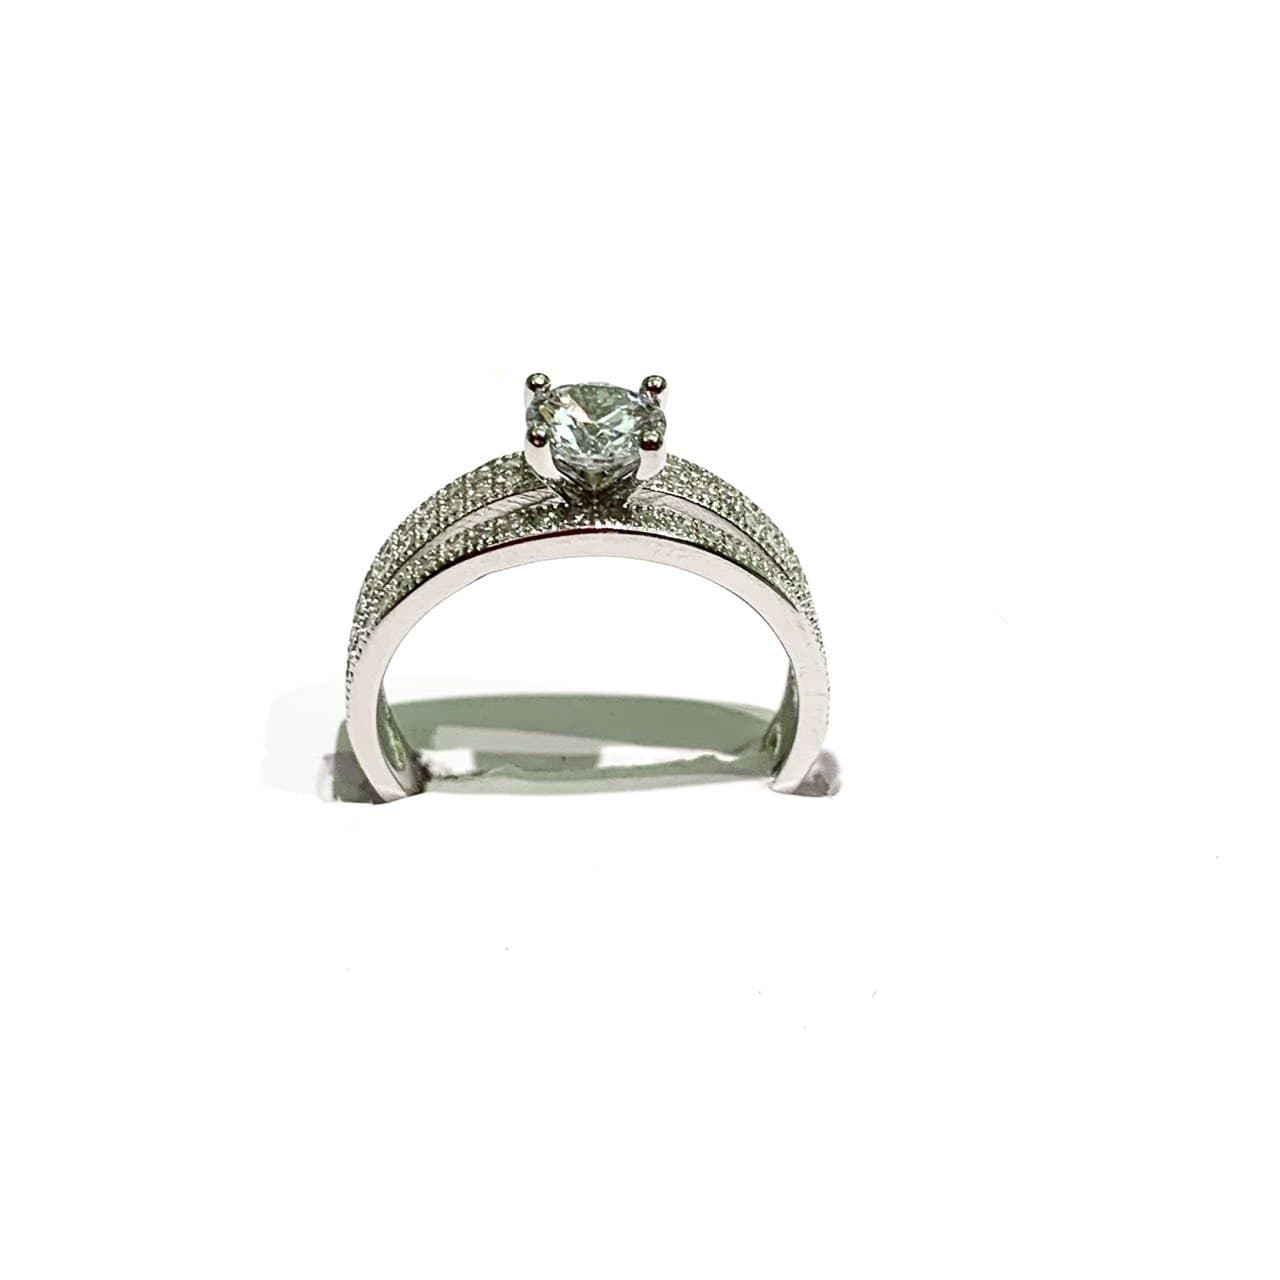 Anello in argento con zircone solitario centrale e gambo impreziosito da zirconi bianchi.  Grandezza zircone 0,4 cm.  Larghezza anello 0,6 cm.  Più misure disponibili.